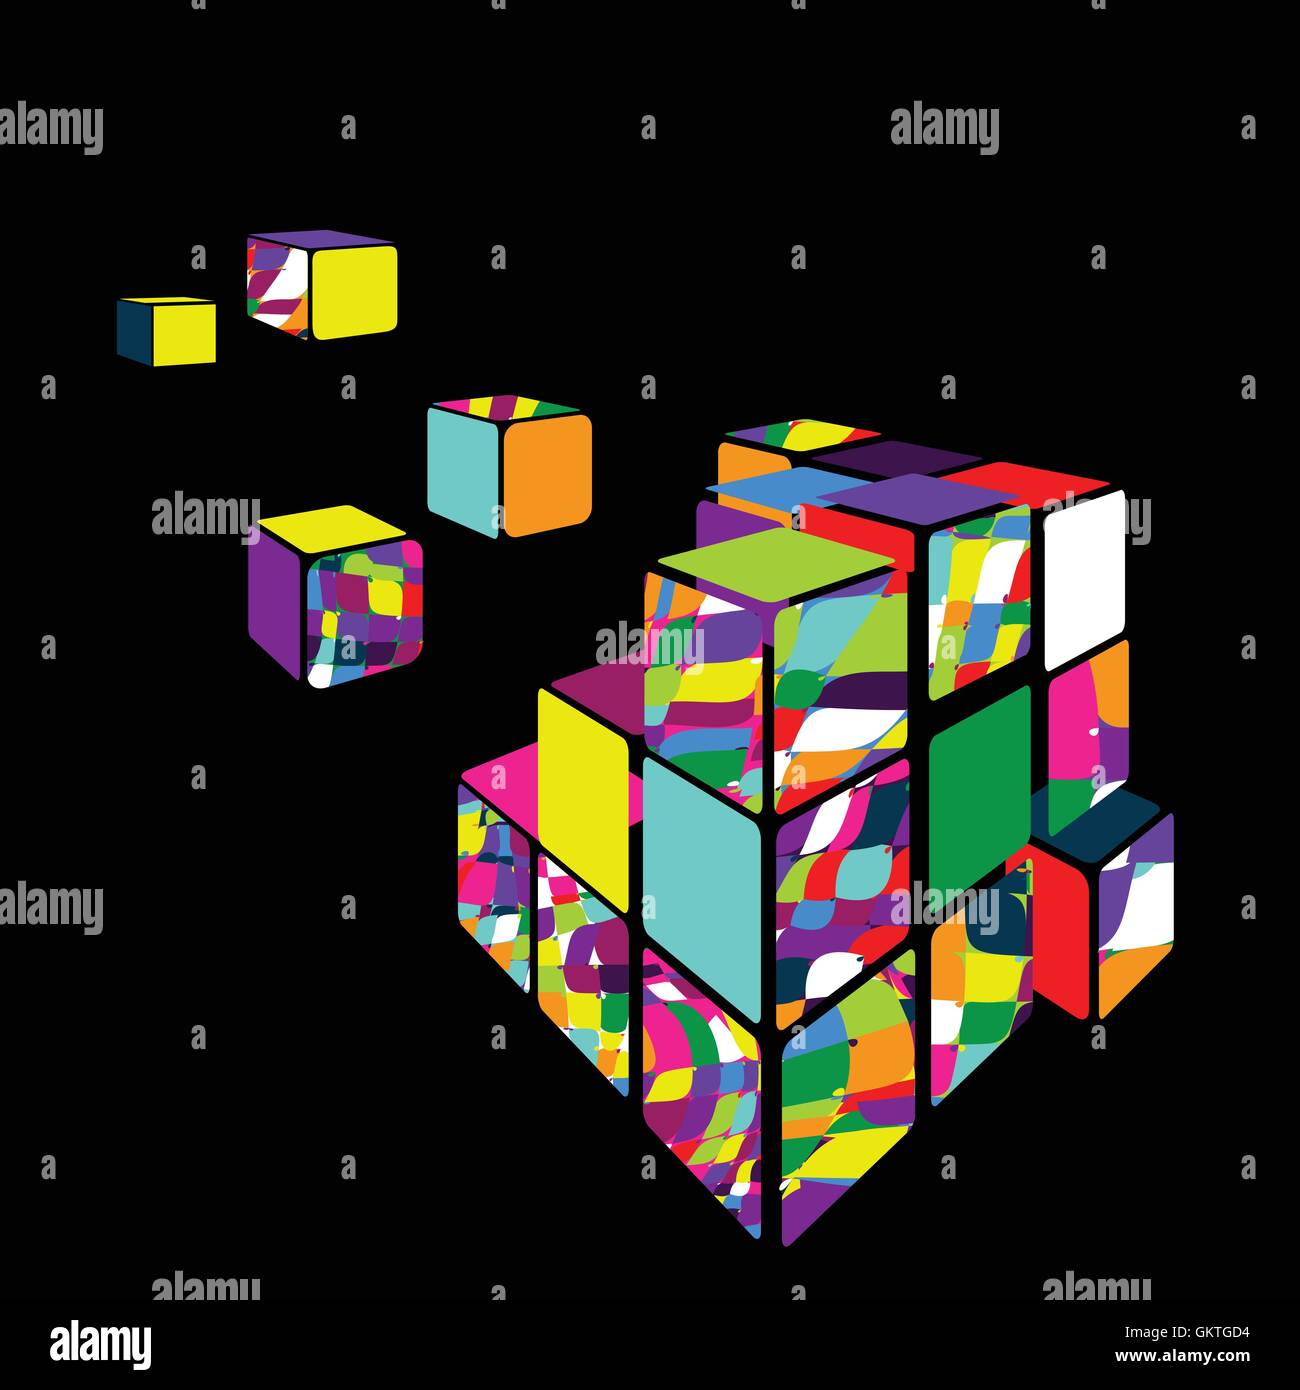 Với Rubik cube, bạn chắc chắn sẽ làm mới trí não và thử thách khả năng giải quyết vấn đề của mình! Khám phá hình ảnh của Rubik cube và tìm thấy sự hứng thú và sự tiết chế mỗi khi chiến thắng những đố vui Tháp Hà Nội này.